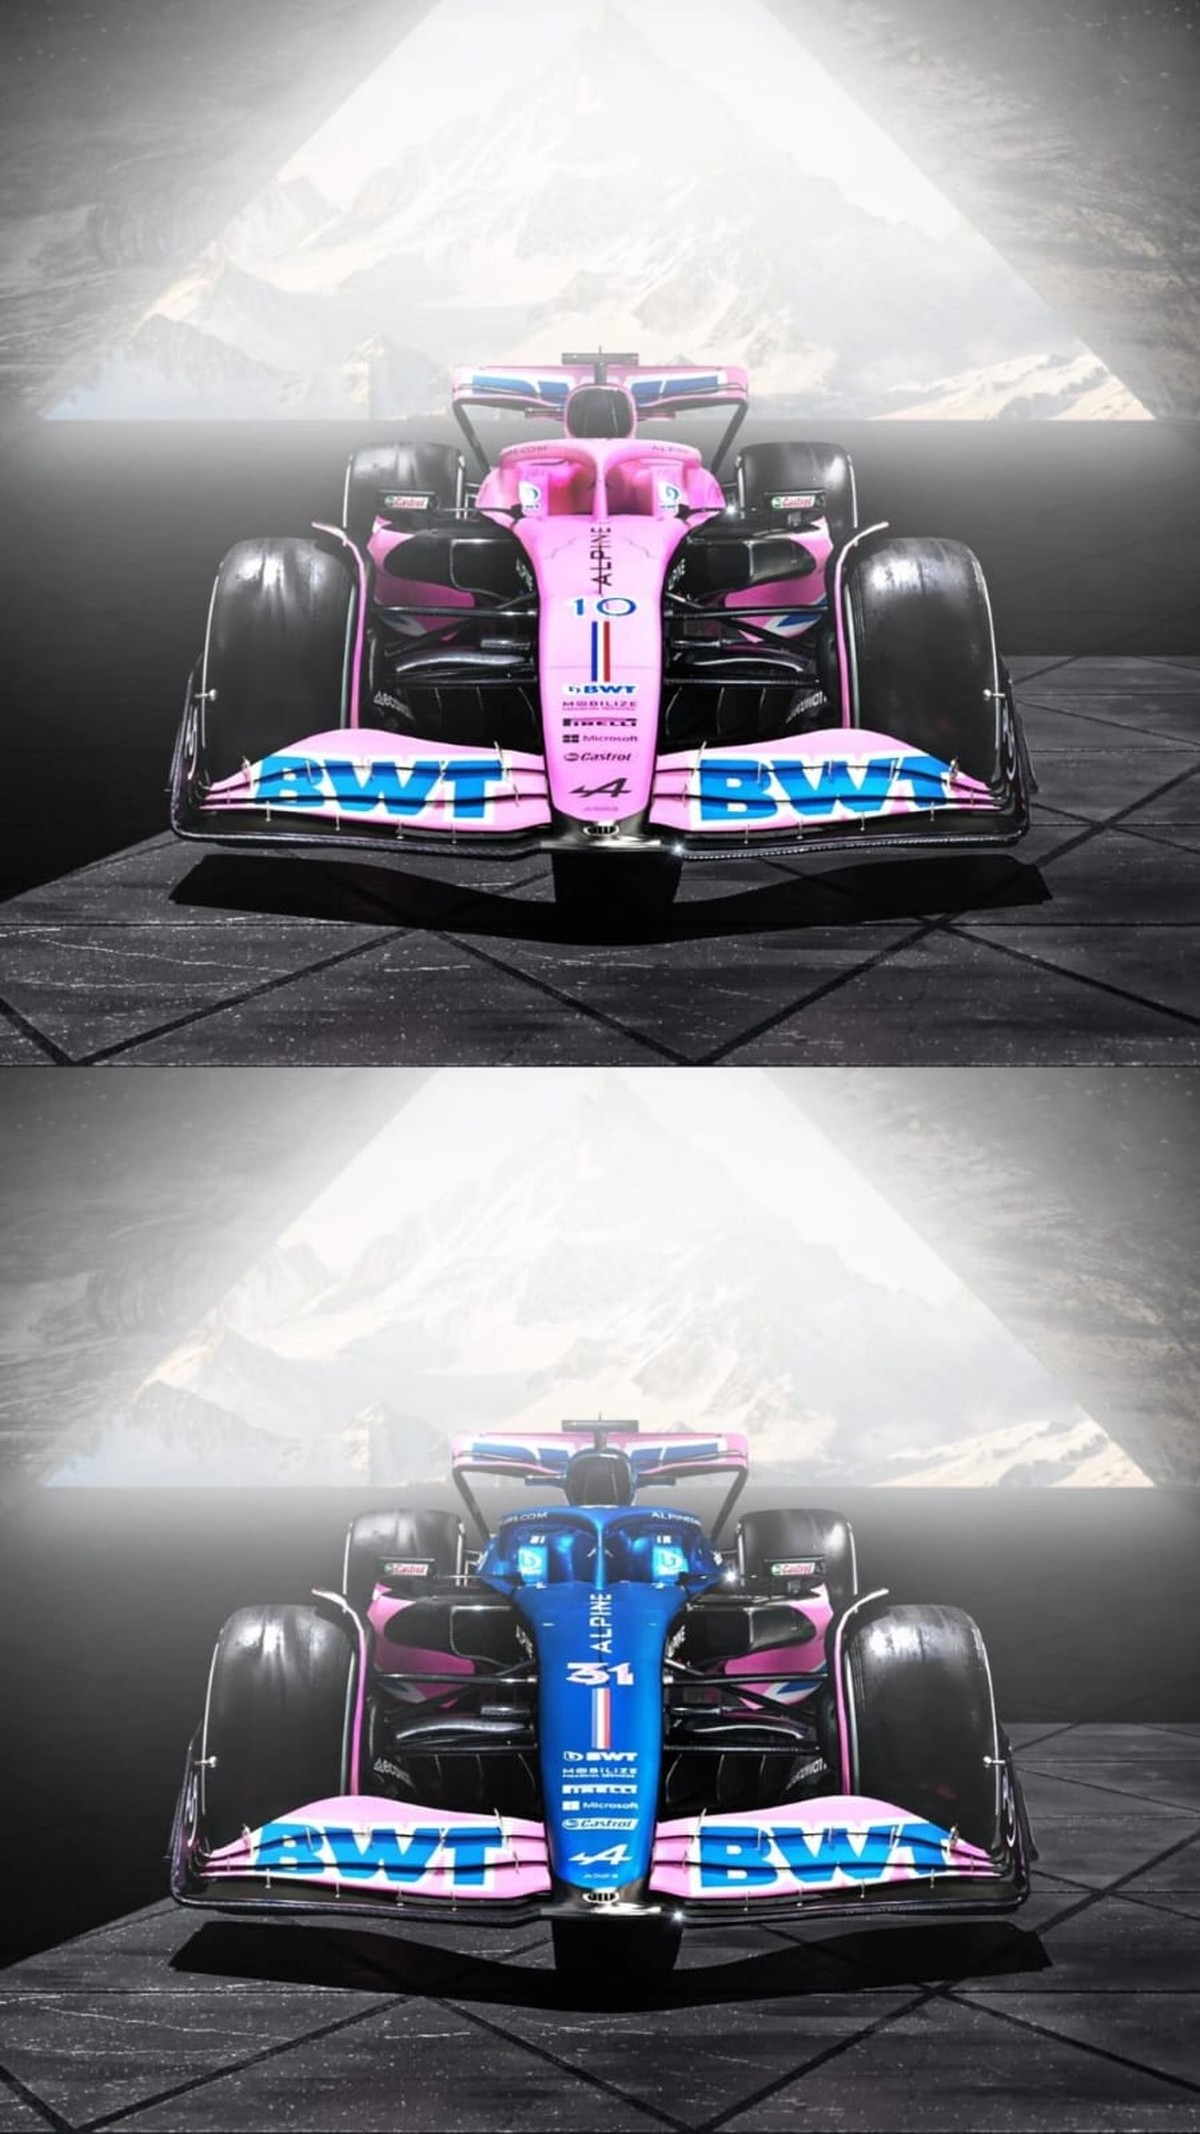 F1: Conheça as mudanças do novo carro e como elas mudam as corridas